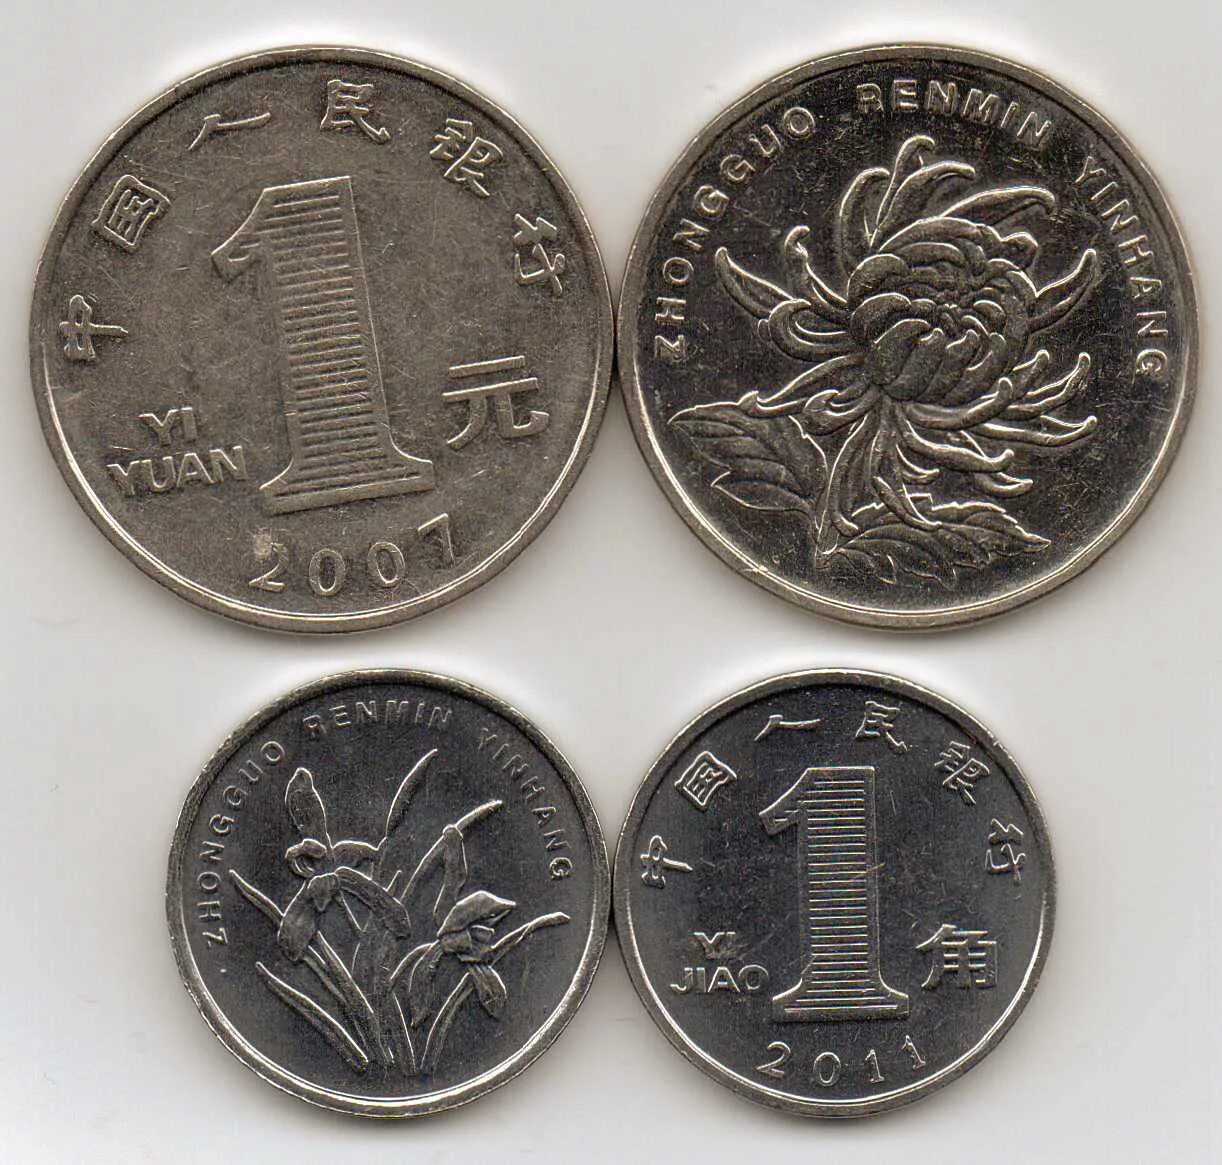 Китайский юань монеты. Монеты номиналом 1 Китай. Китайская валюта юань монеты. Современные китайские деньги. Китайская монета 1 рубль.